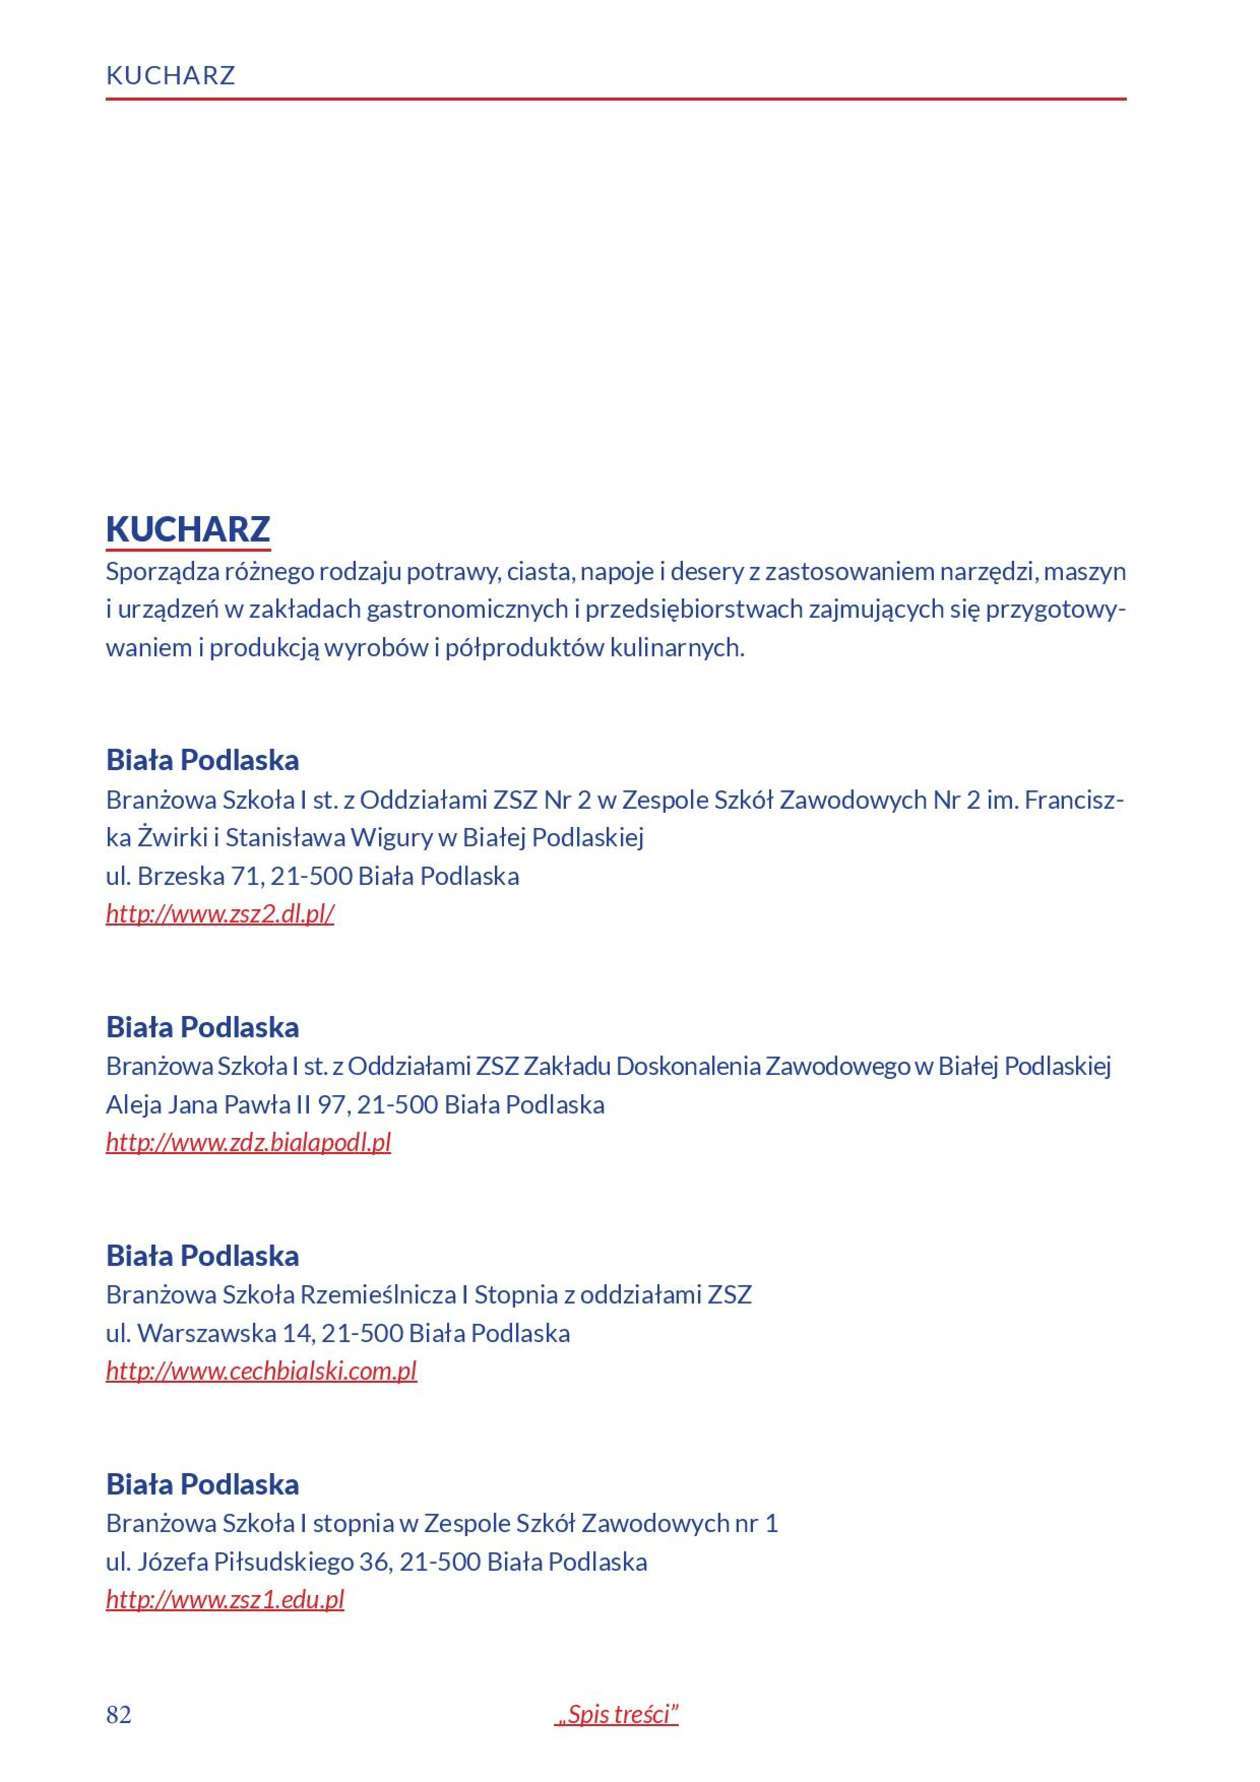  Informator o zawodach 2018/2019 w woj. lubelskim. Część 1 (zdjęcie 80) - Autor: Kuratorium Oświaty w Lublinie